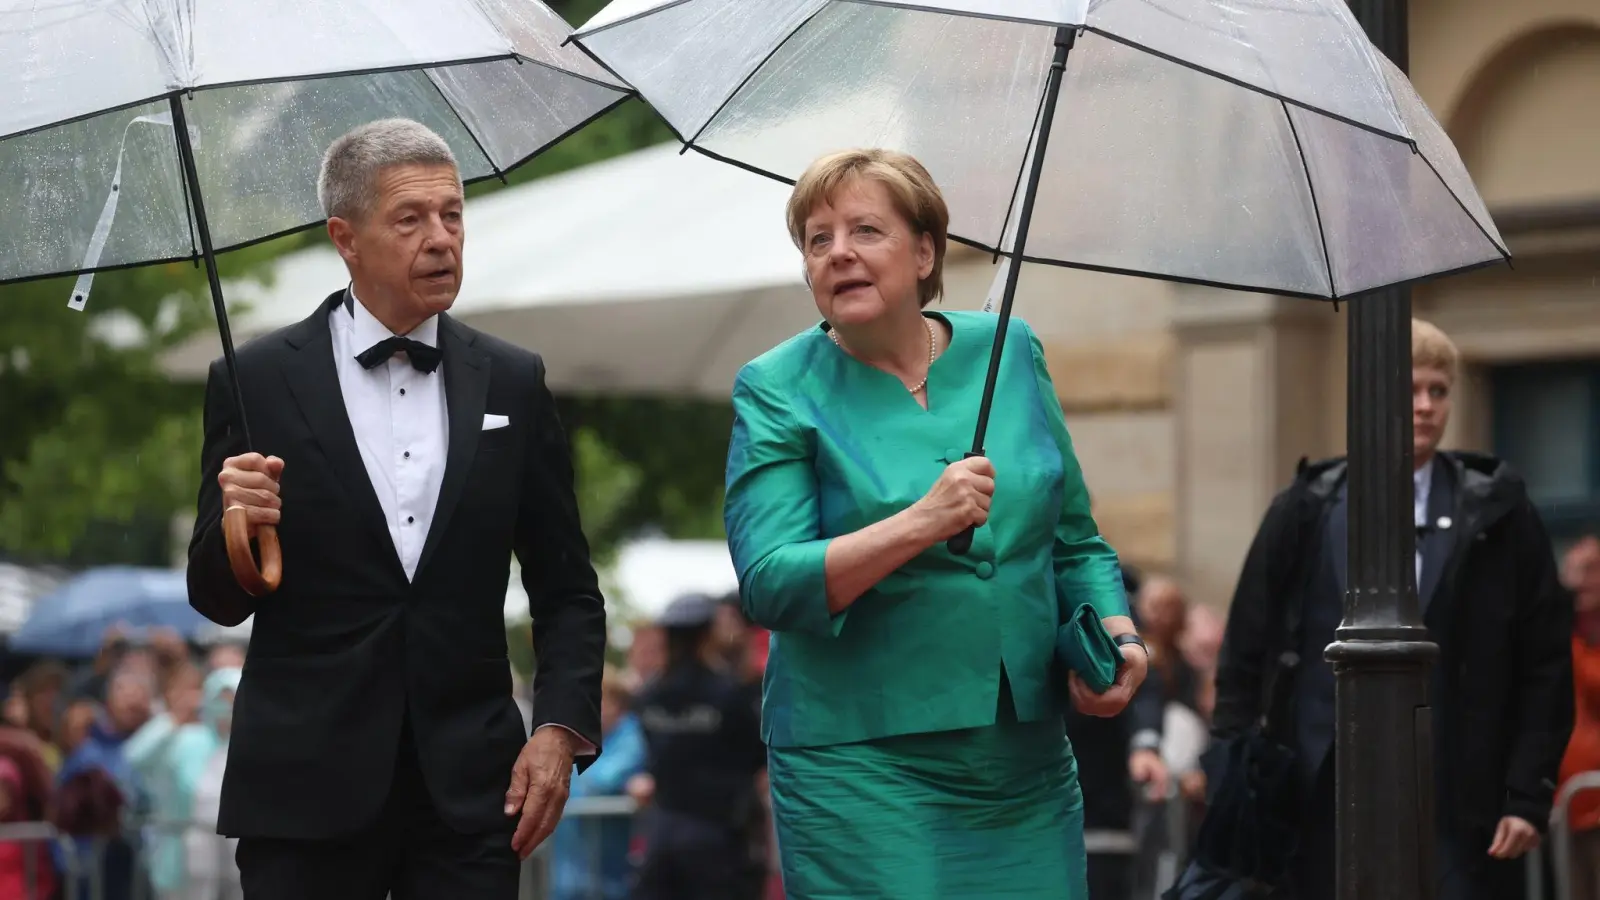 Die frühere Bundeskanzlerin Angela Merkel ist bekennende Liebhaberin von Wagners Musik. Sie kommt in Begleitung ihres Ehemannes Joachim Sauer zur Eröffnung. (Foto: Karl-Josef Hildenbrand/dpa)